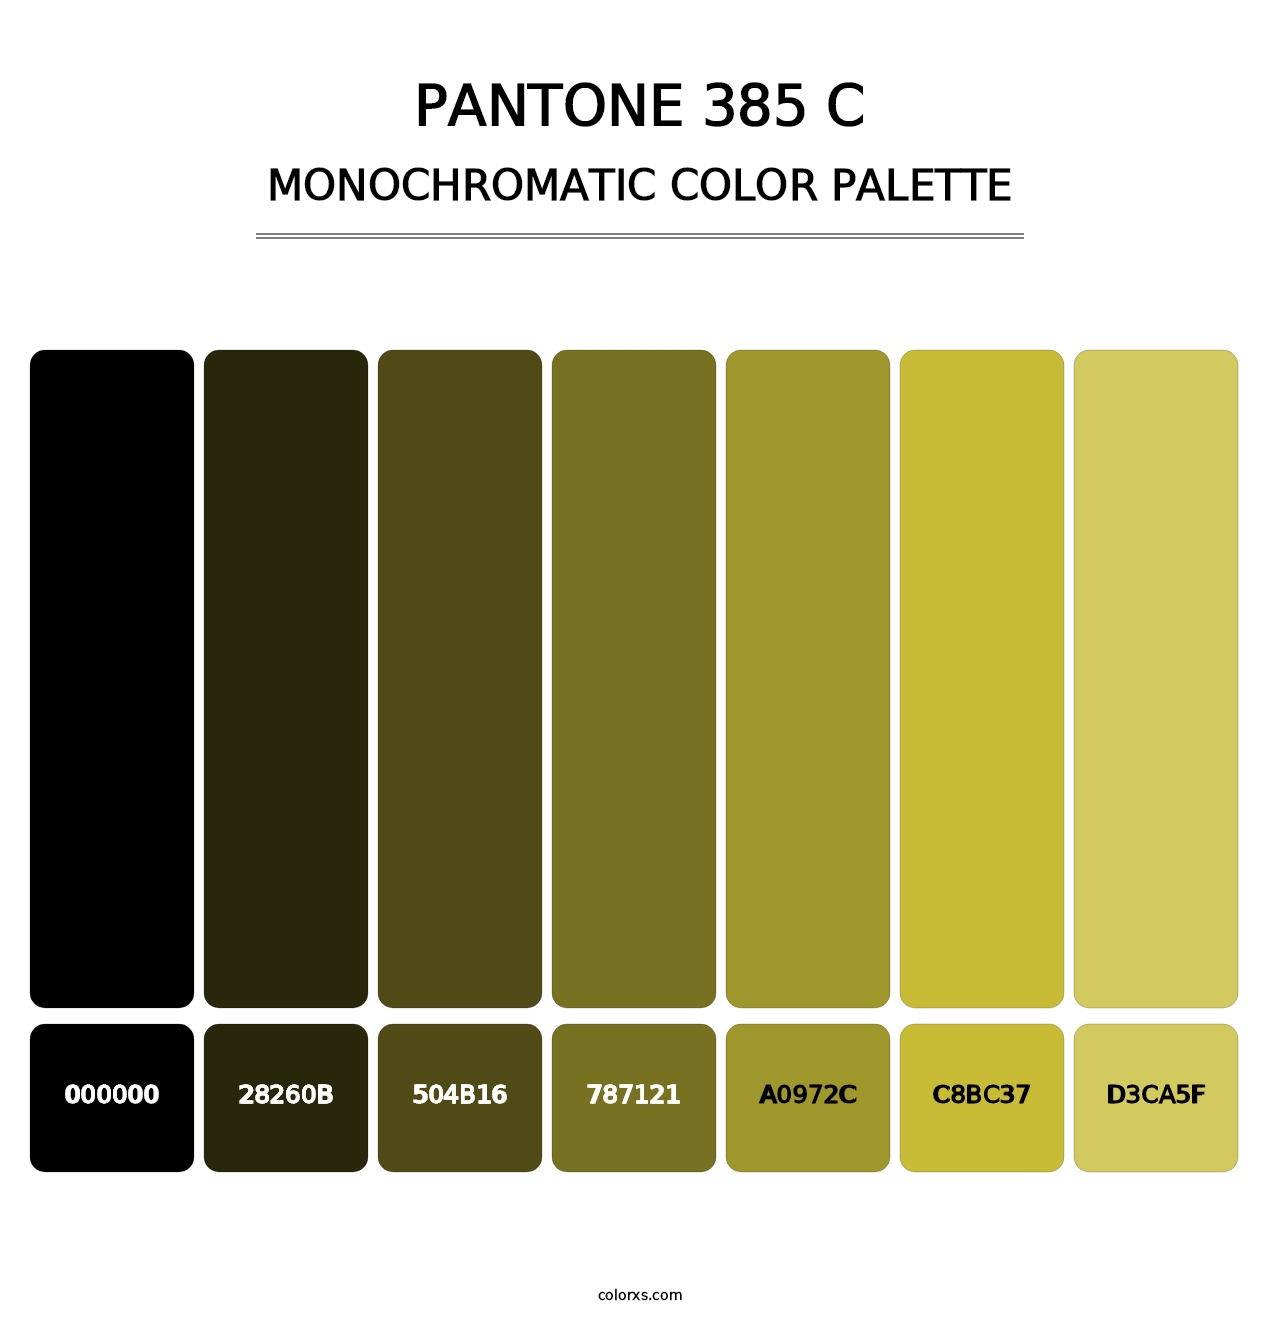 PANTONE 385 C - Monochromatic Color Palette